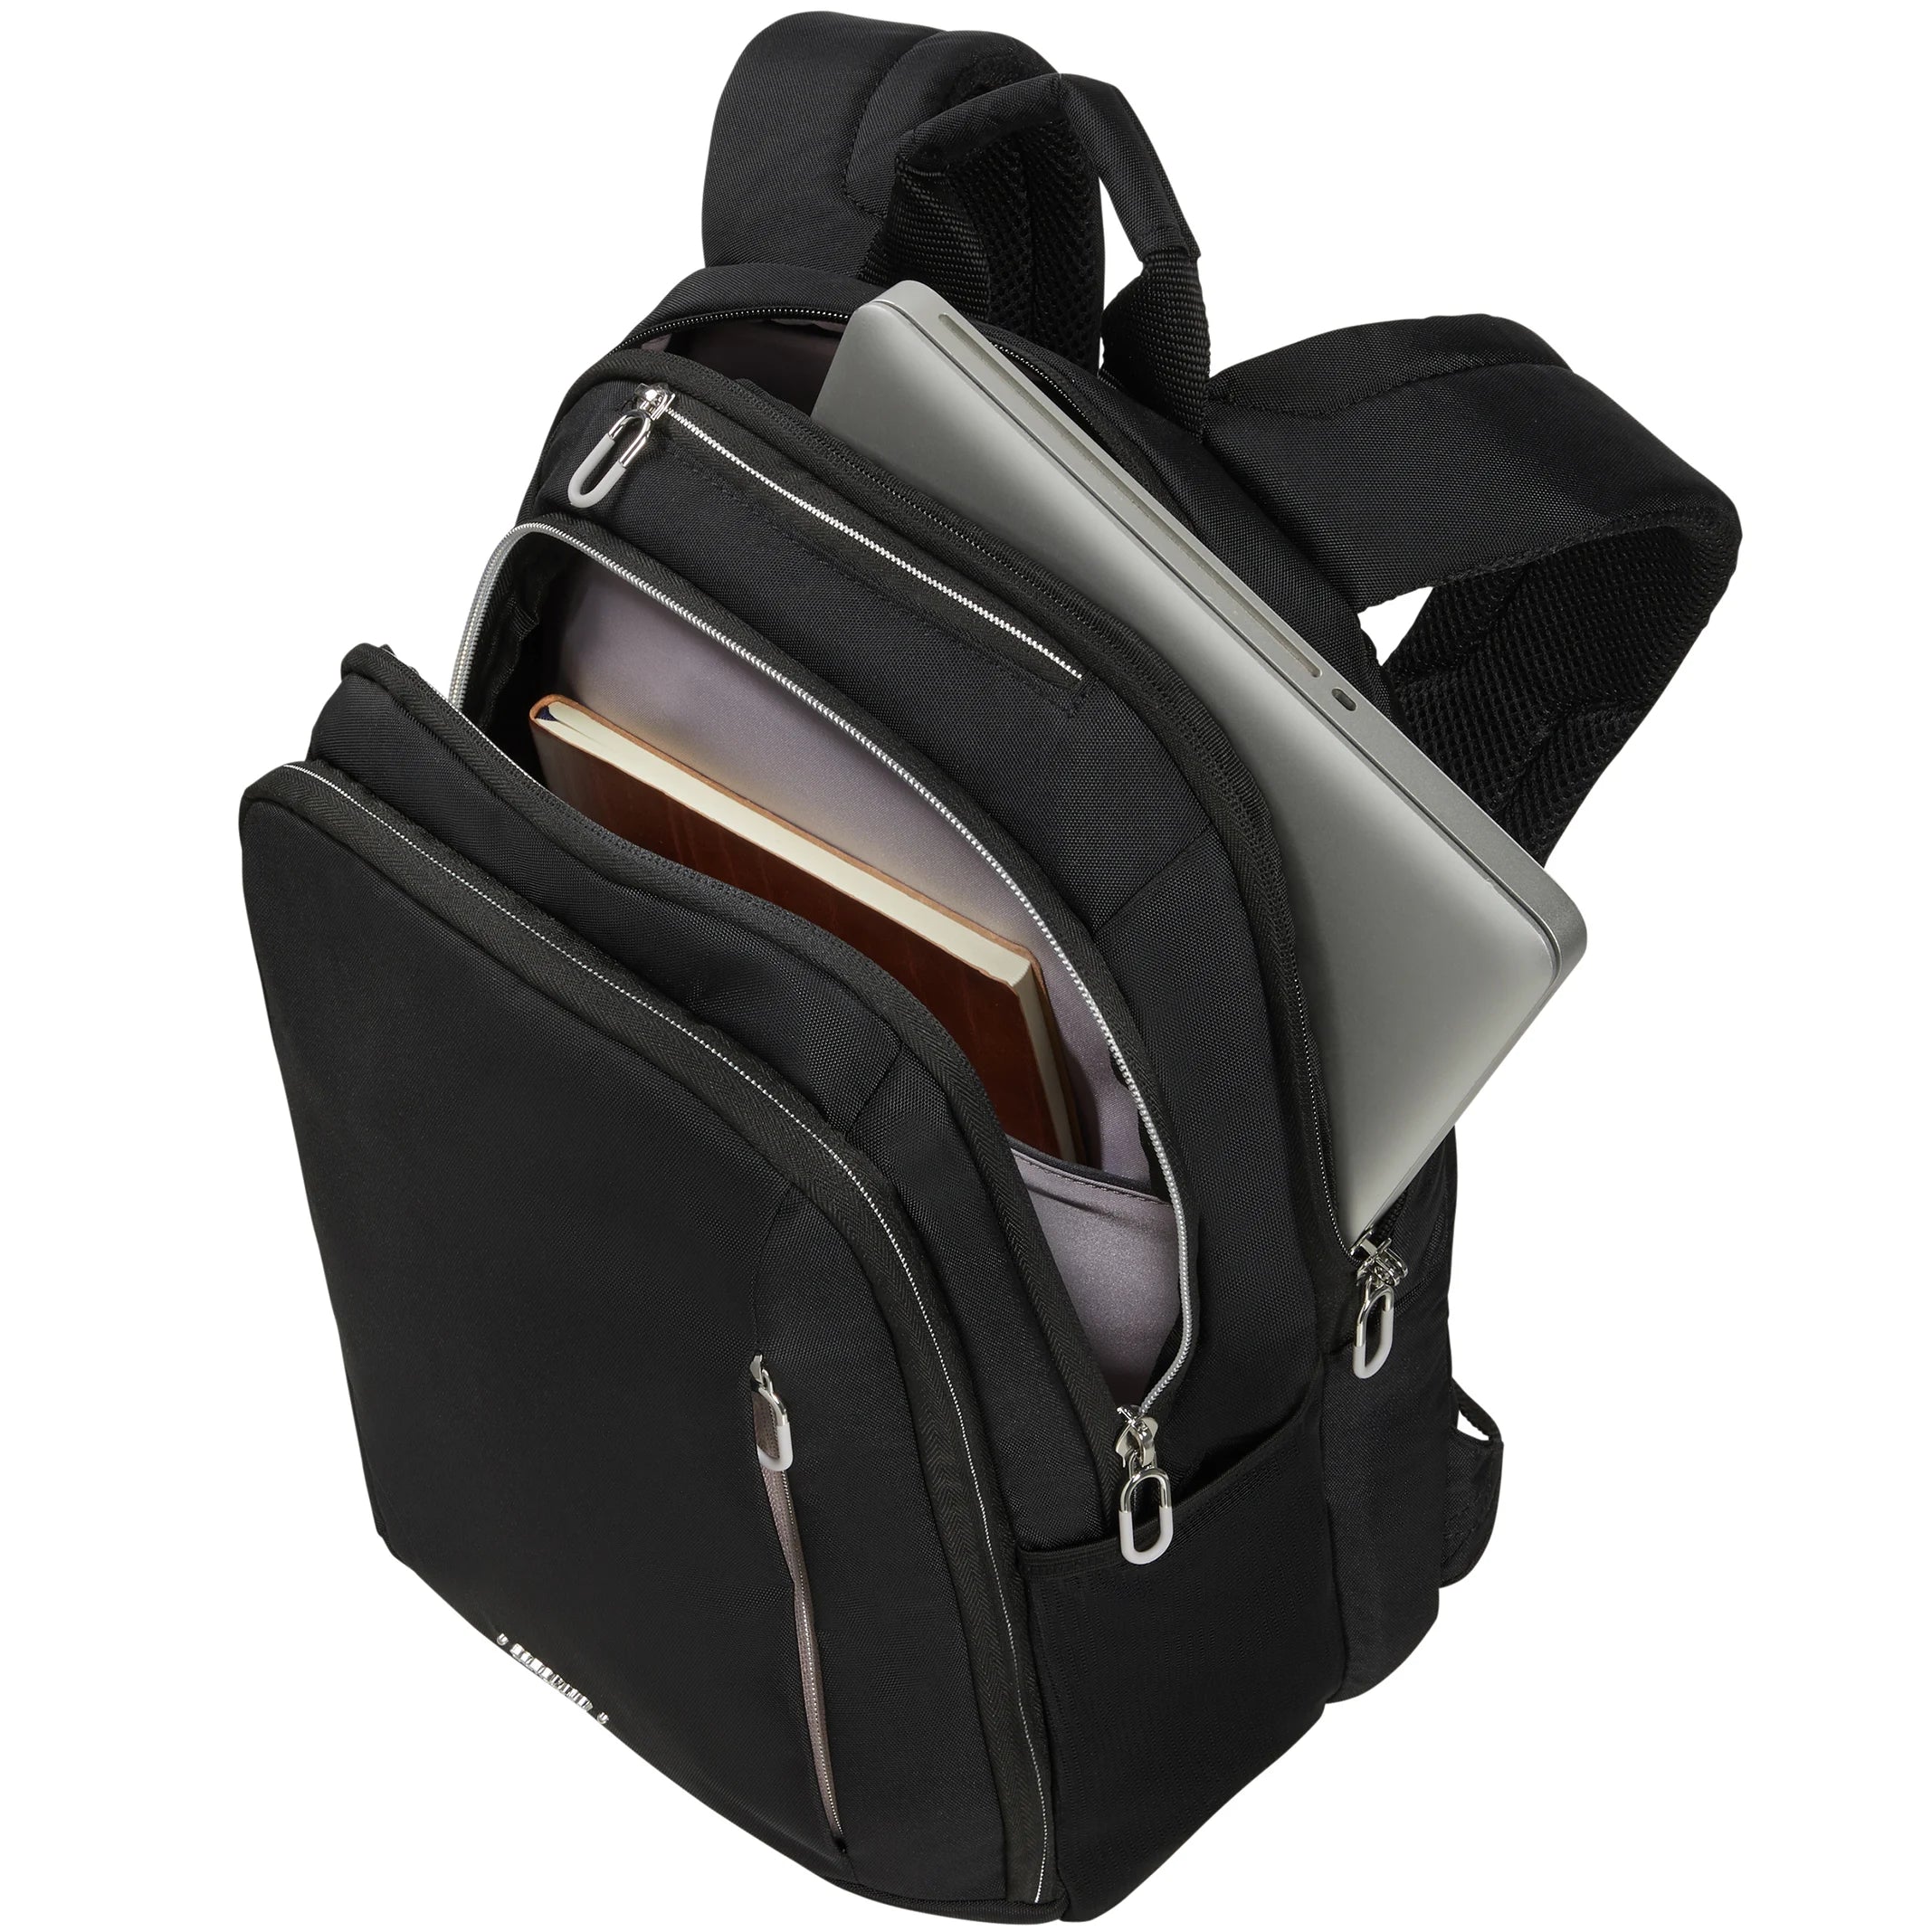 Samsonite Guardit Classy Backpack 40 cm - Black